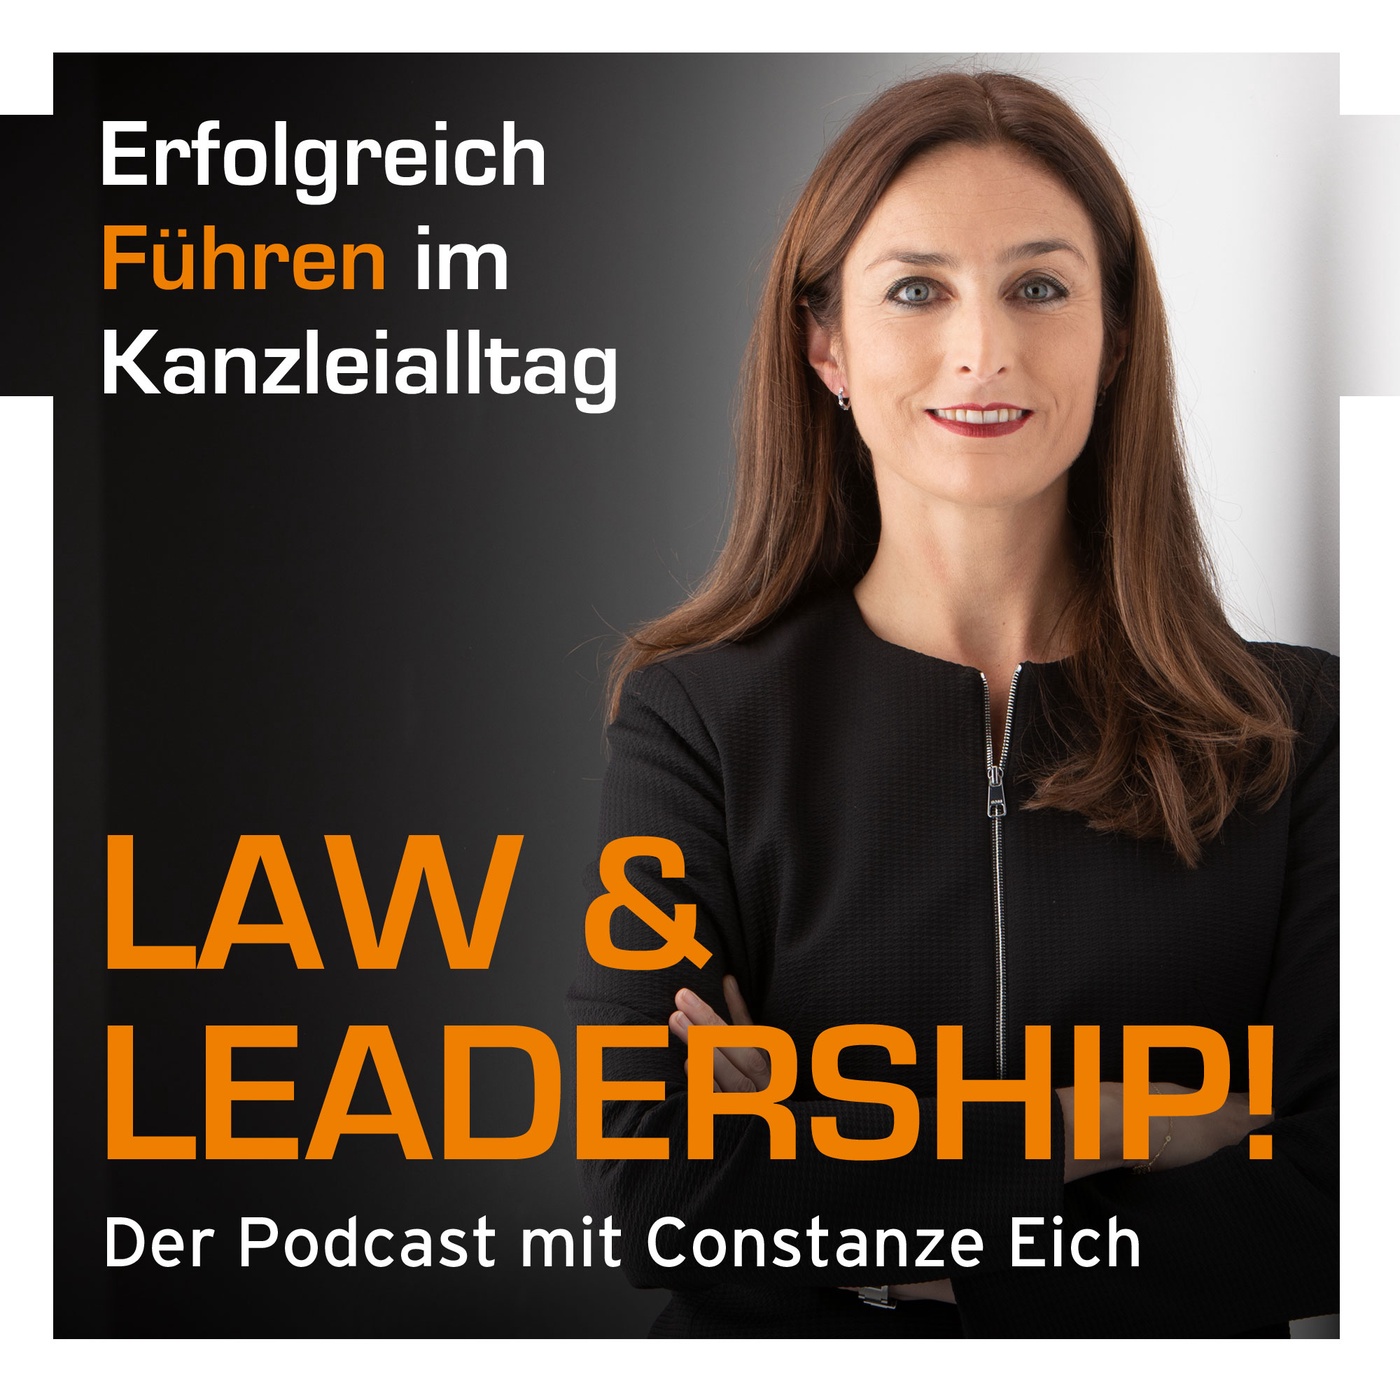 Law & Leadership - Erfolgreich führen im Kanzleialltag